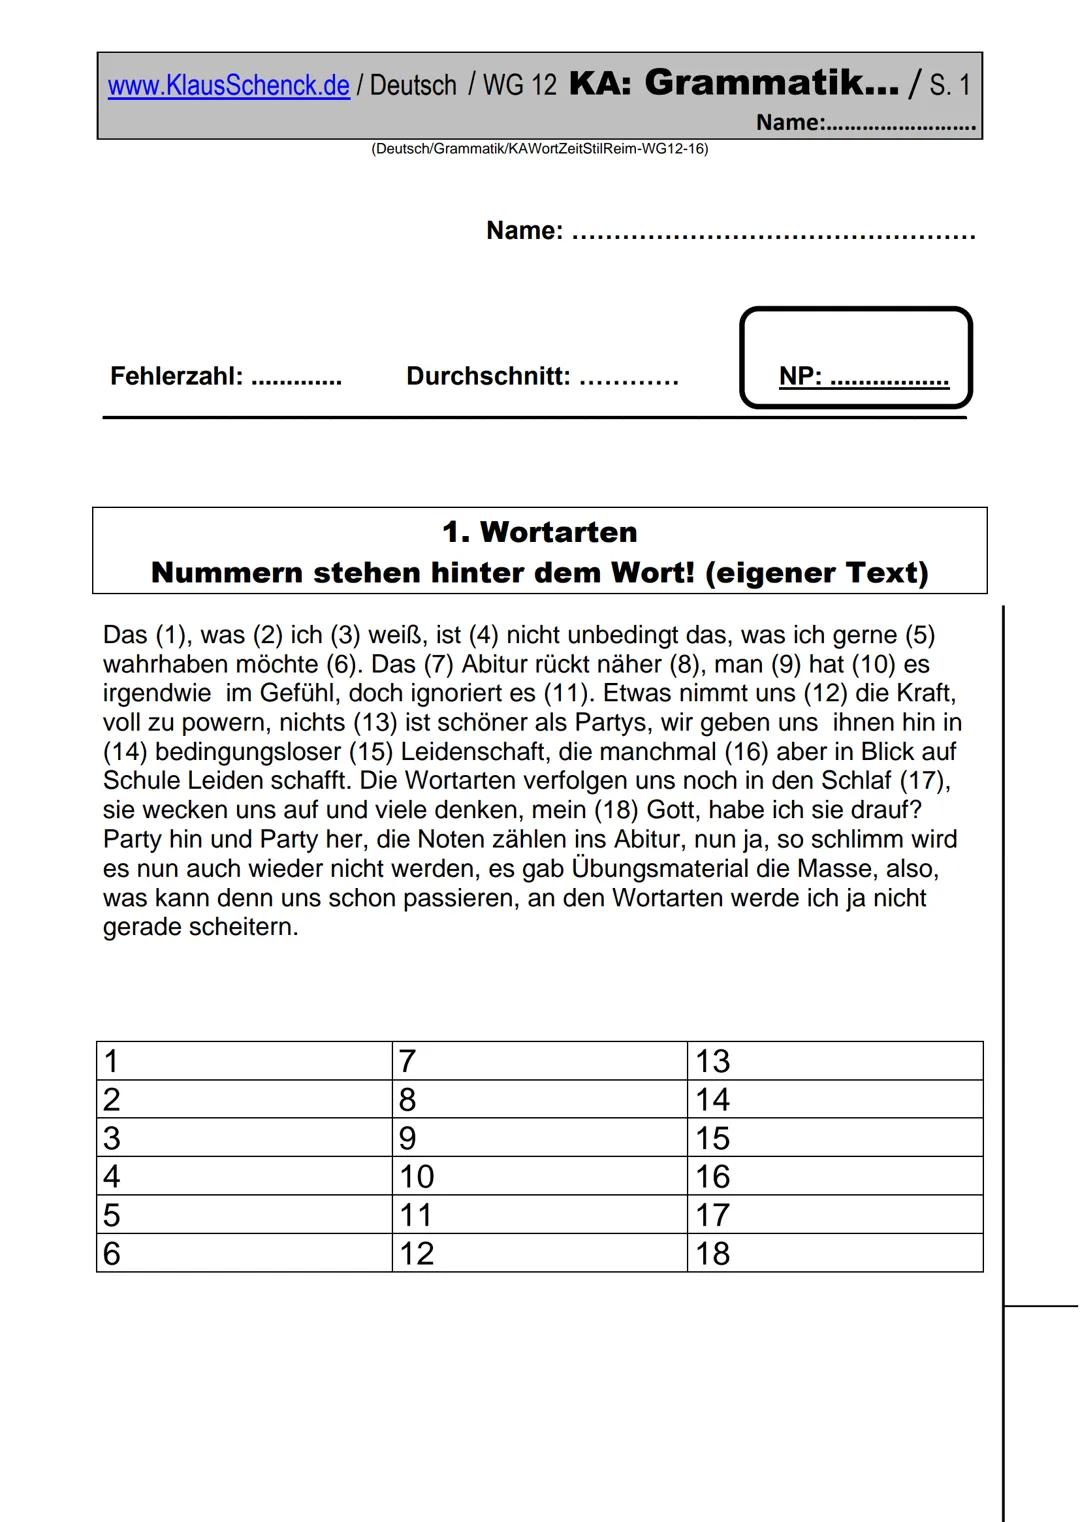 www.KlausSchenck.de / Deutsch / WG 13 KA: Grammatik / S. 1
(Deutsch/Grammatik/KAWortZeit-WG13-17)
Klasse: WG 13
Fehlerzahl:
Name:
Durchschni